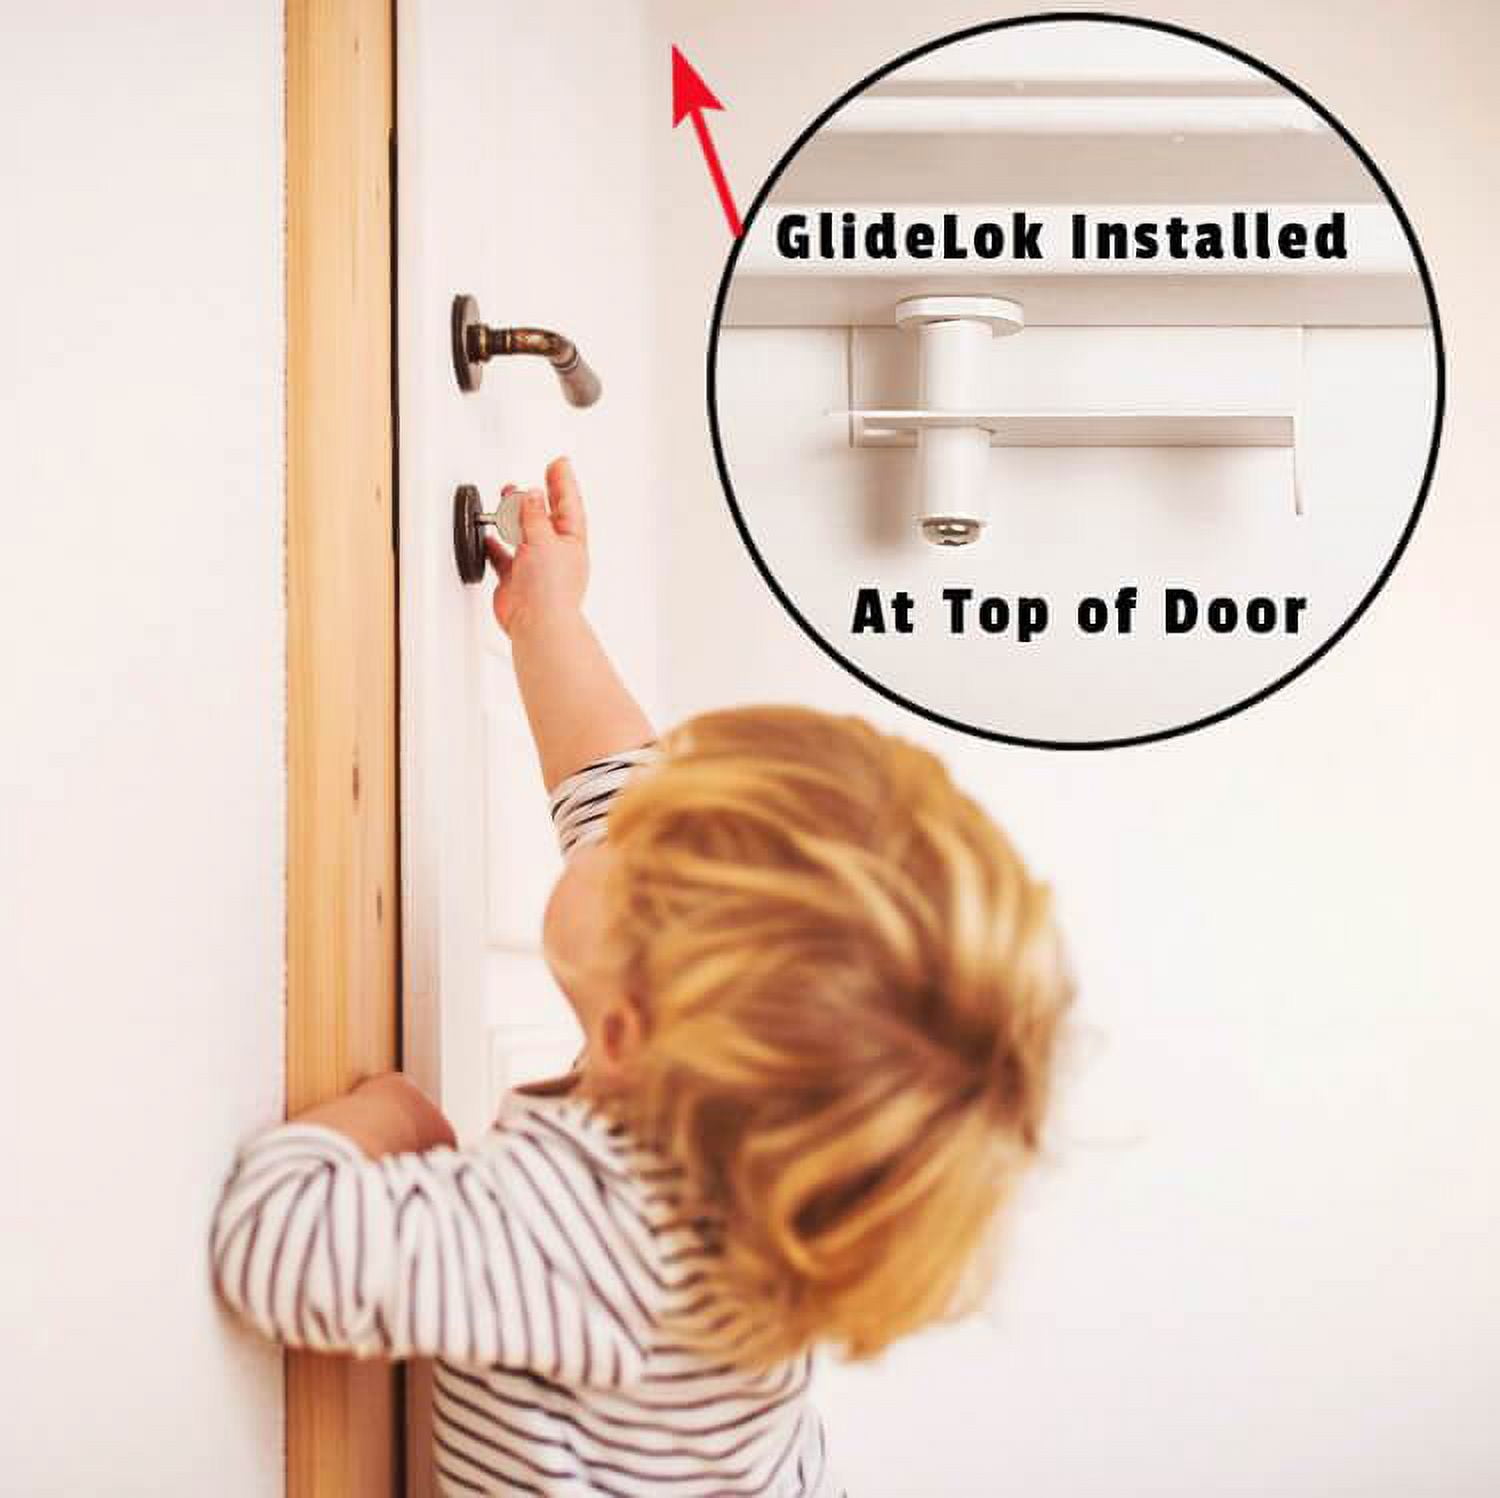 4 Pack - GlideLok Child Safety Door Top Lock